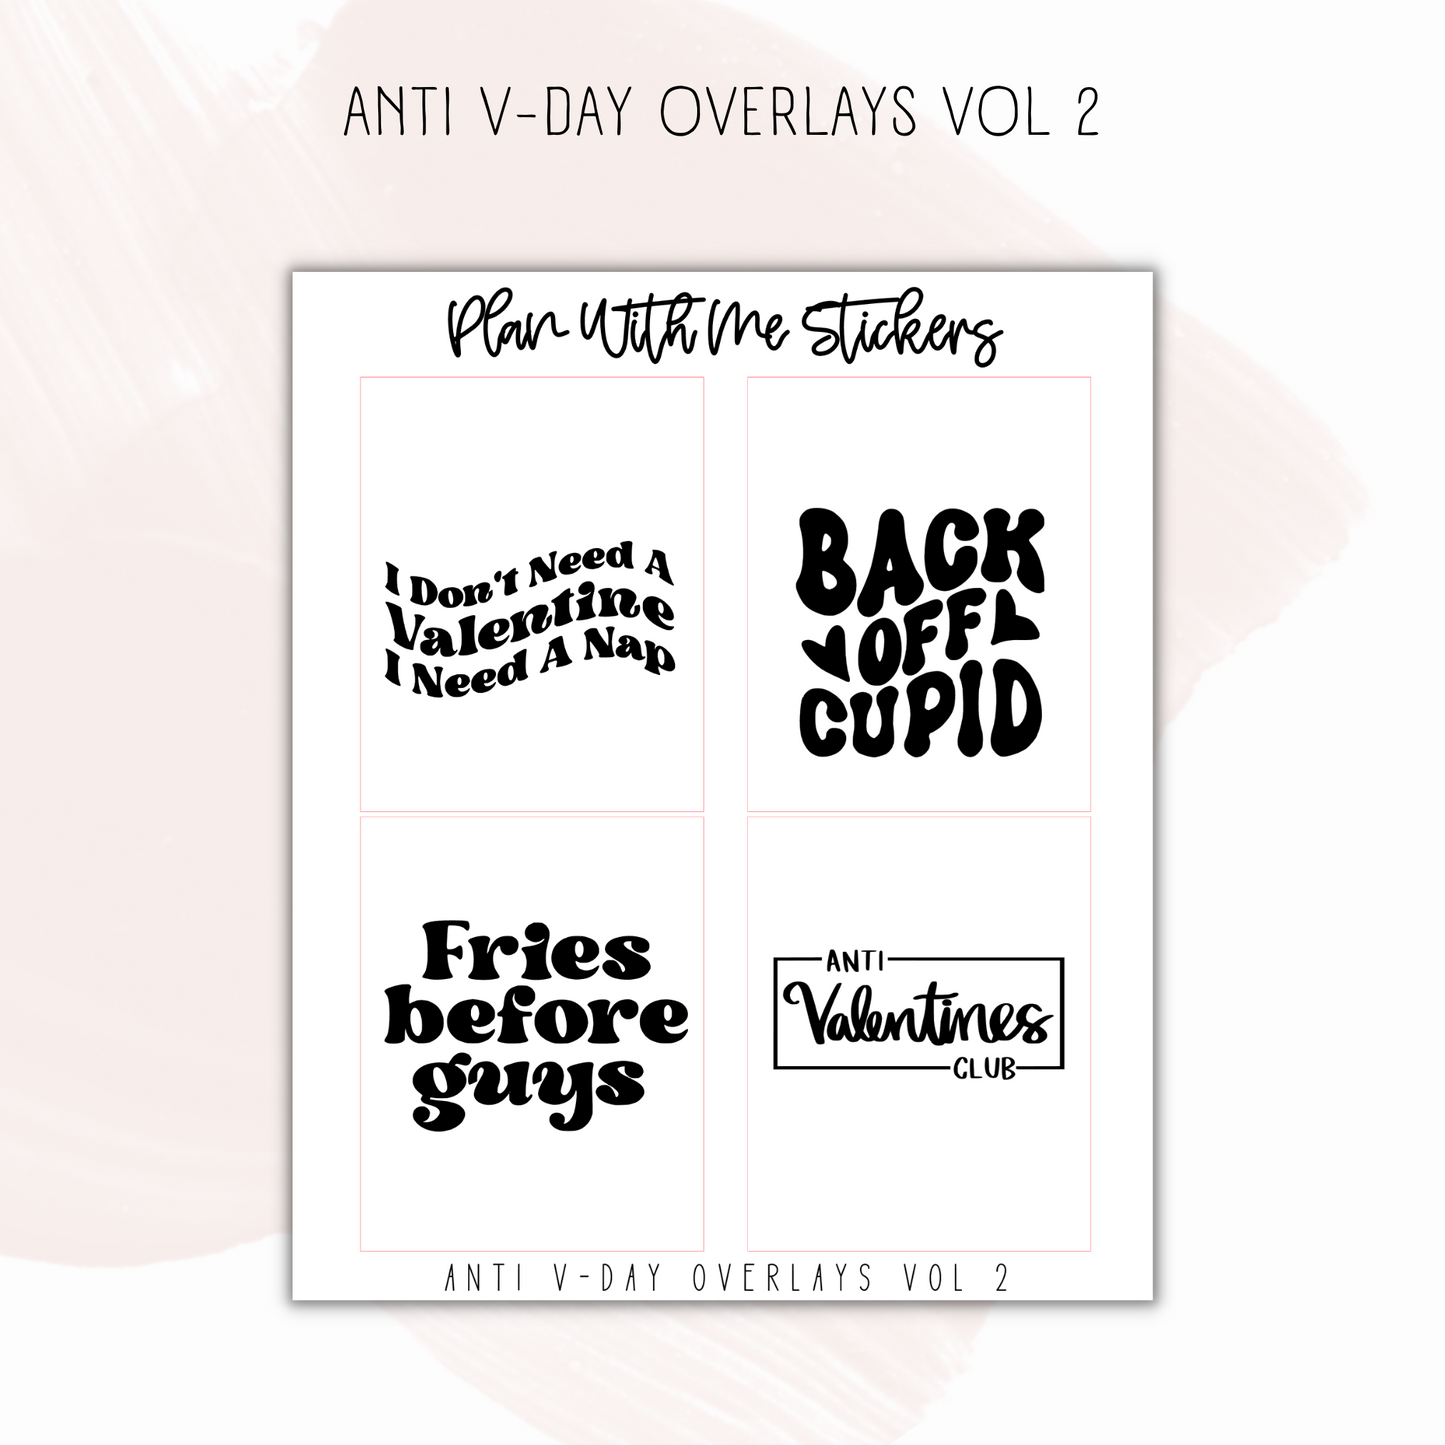 Anti V-Day Overlays Vol 2